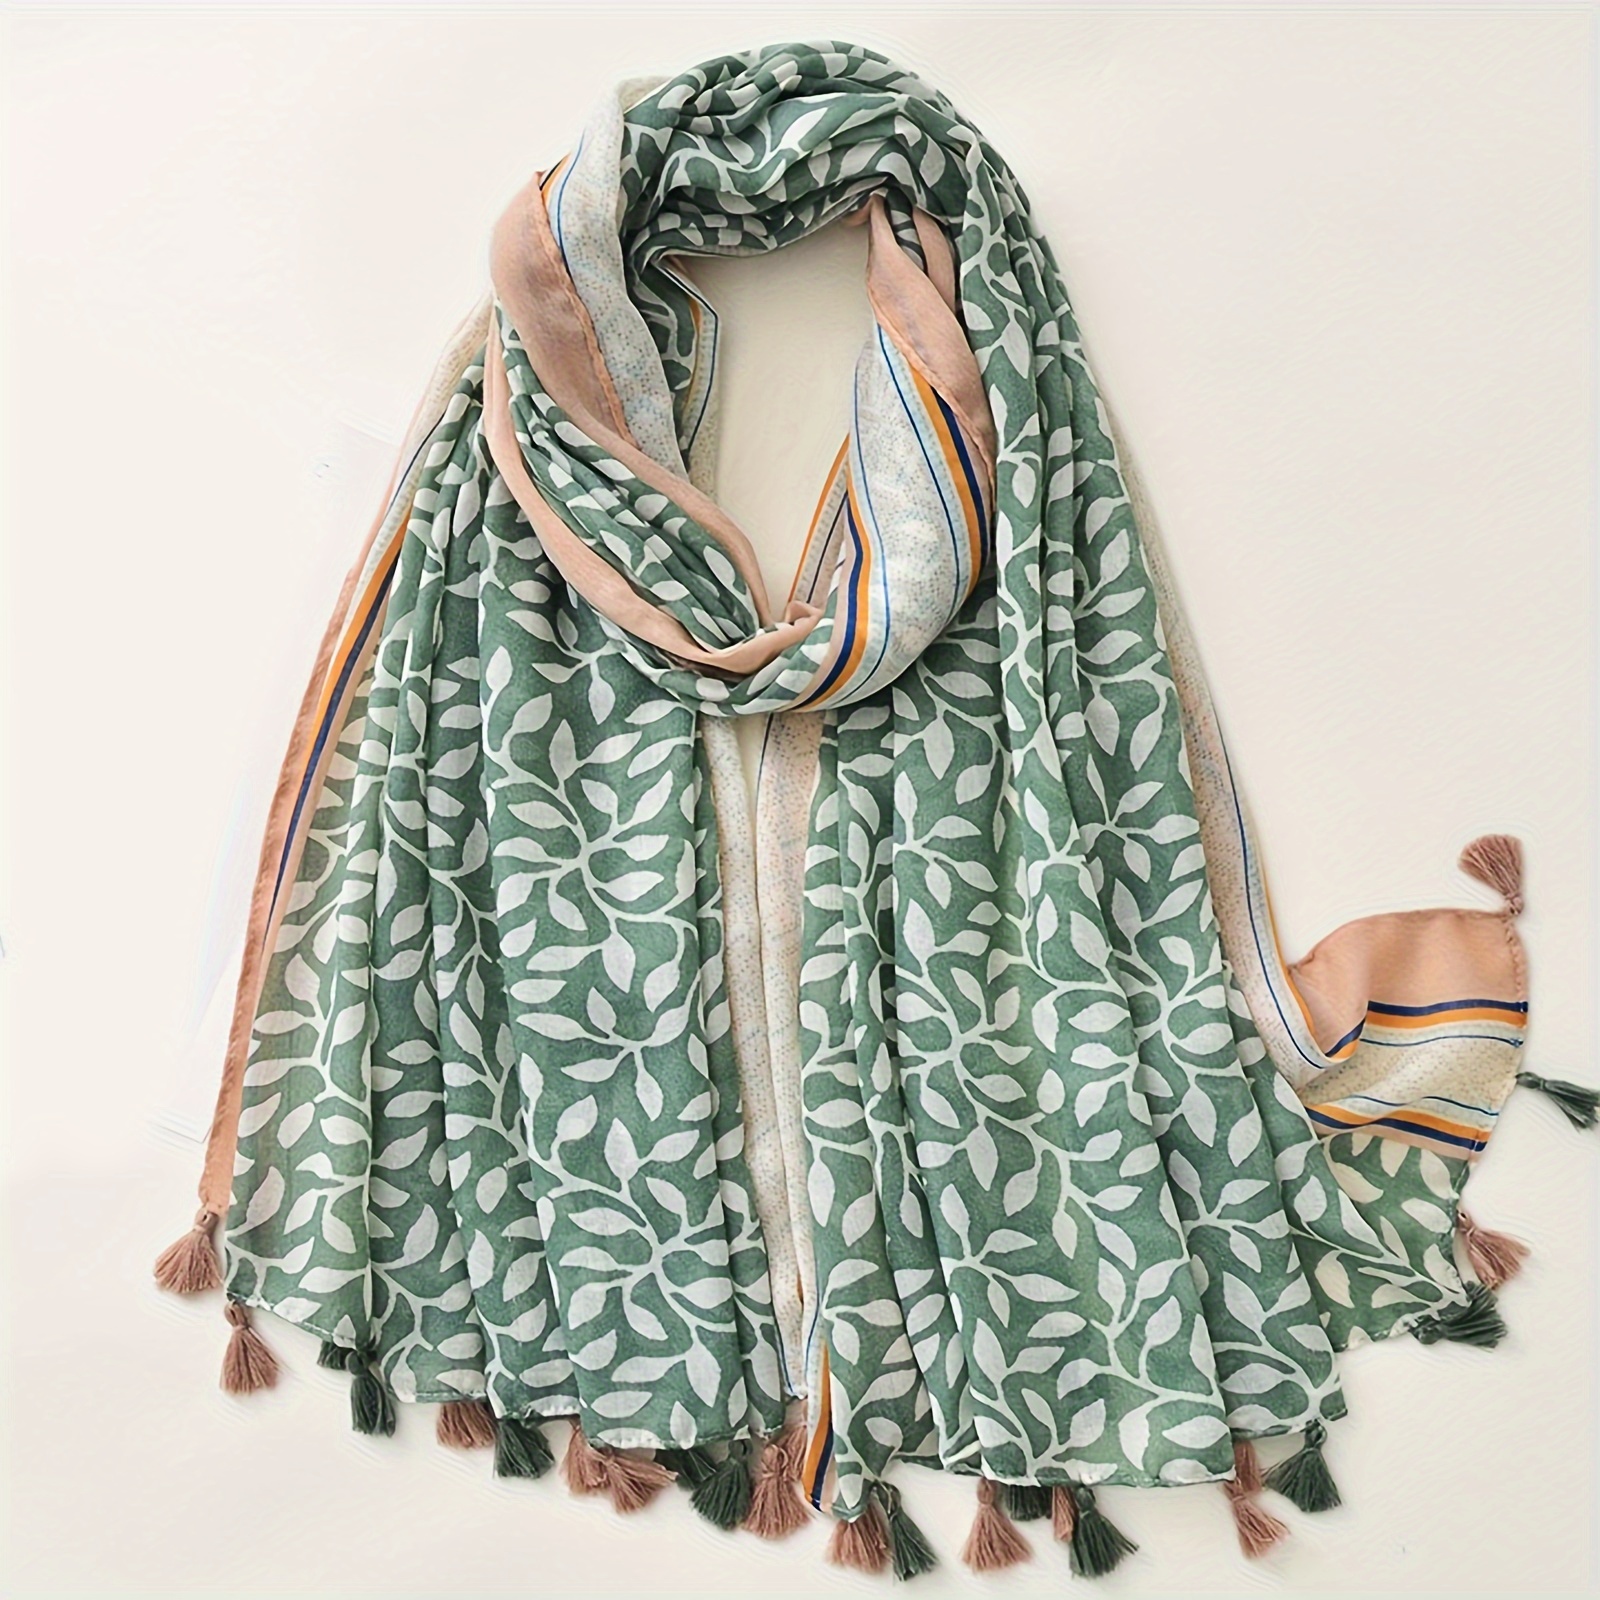 

Bohemian Tassel Scarf For Women, Cotton-linen Blend Elegant Fringe Shawl For Autumn/winter, Travel Wrap